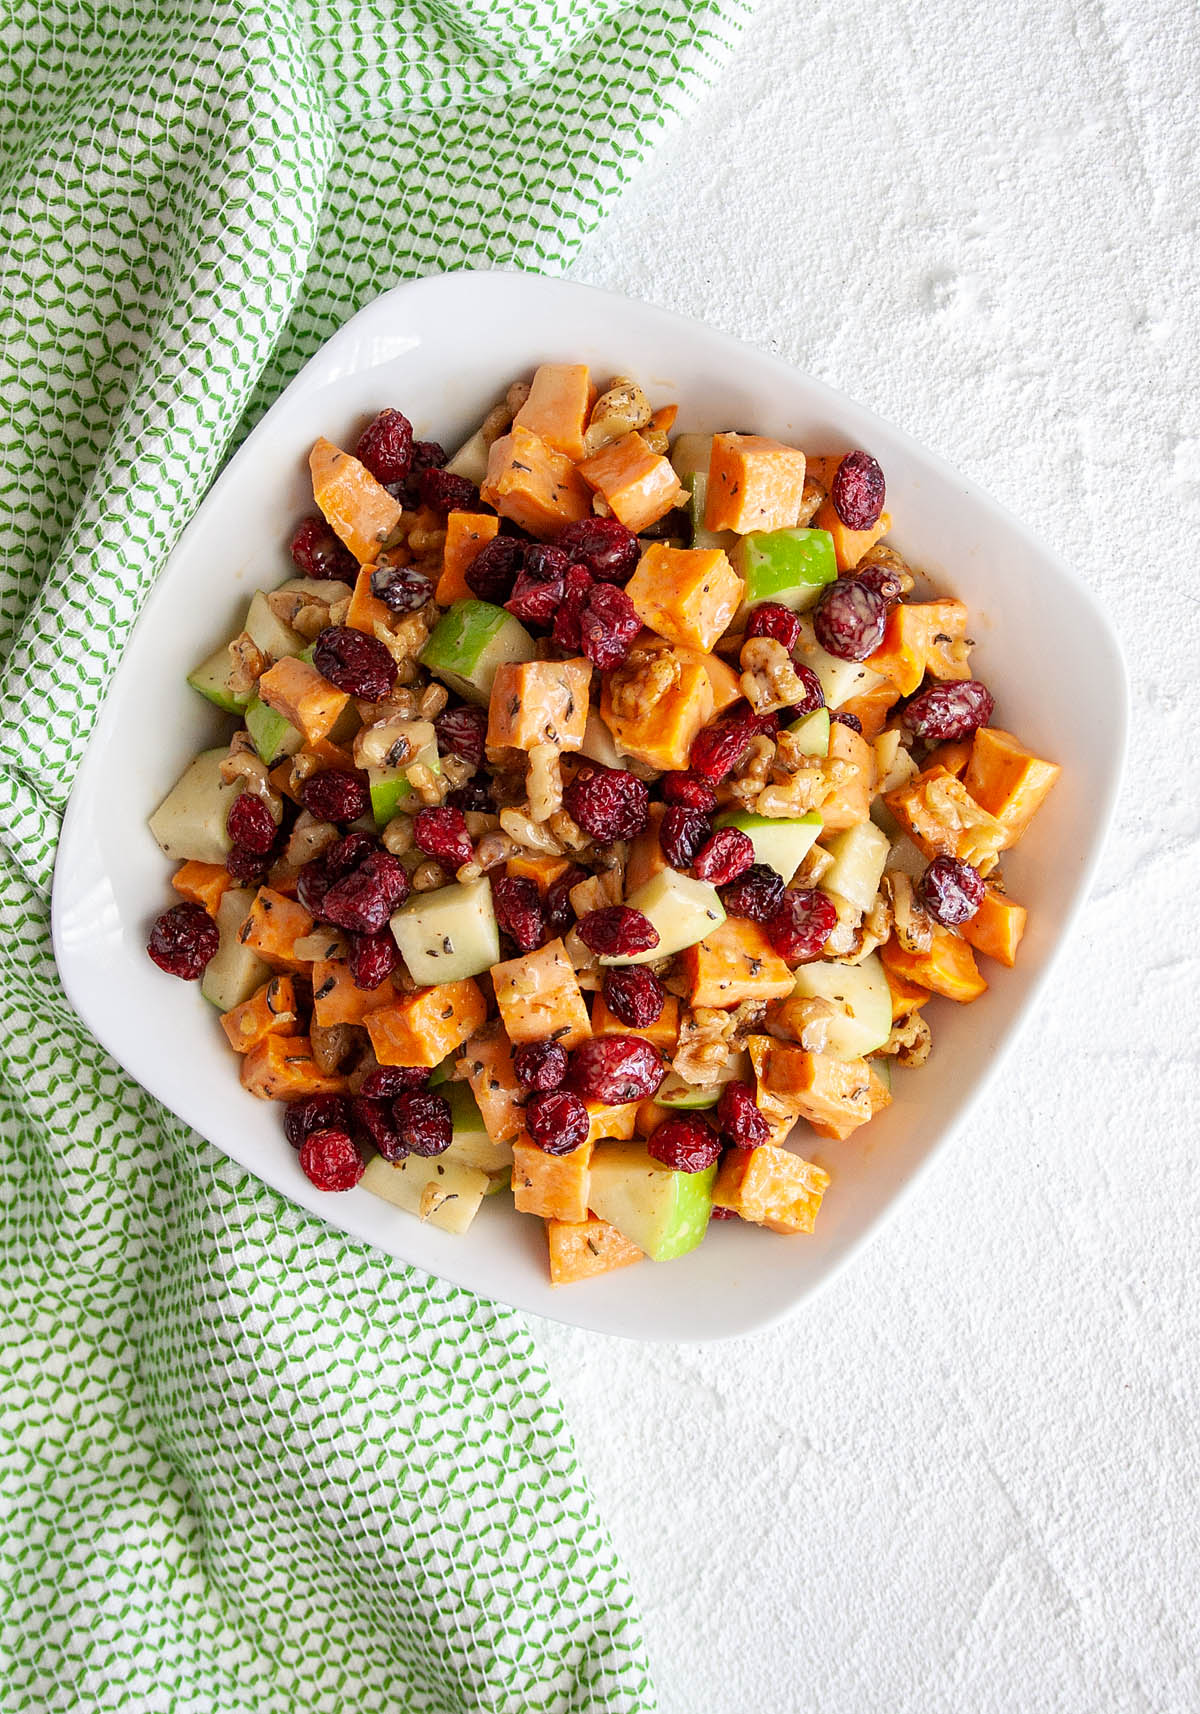 Μια vegan απολαυστική φθινοπωρινή σαλάτα με ψητή γλυκοπατάτα και μήλο